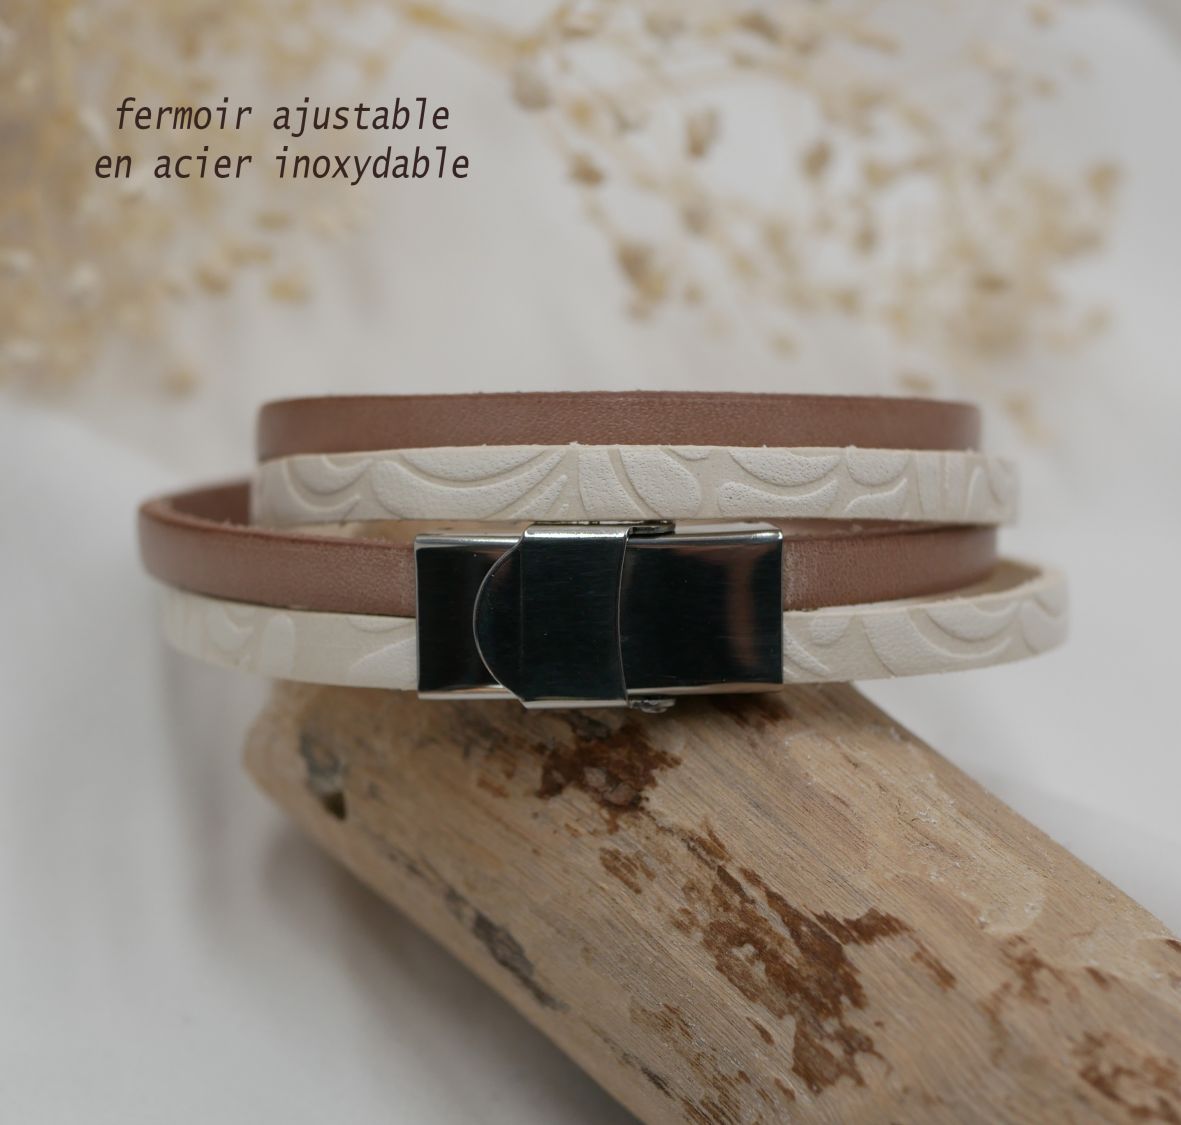 Armband Doppel weißes Leder mit Relief und Farbe nach Wahl zu personalisieren durch Gravur